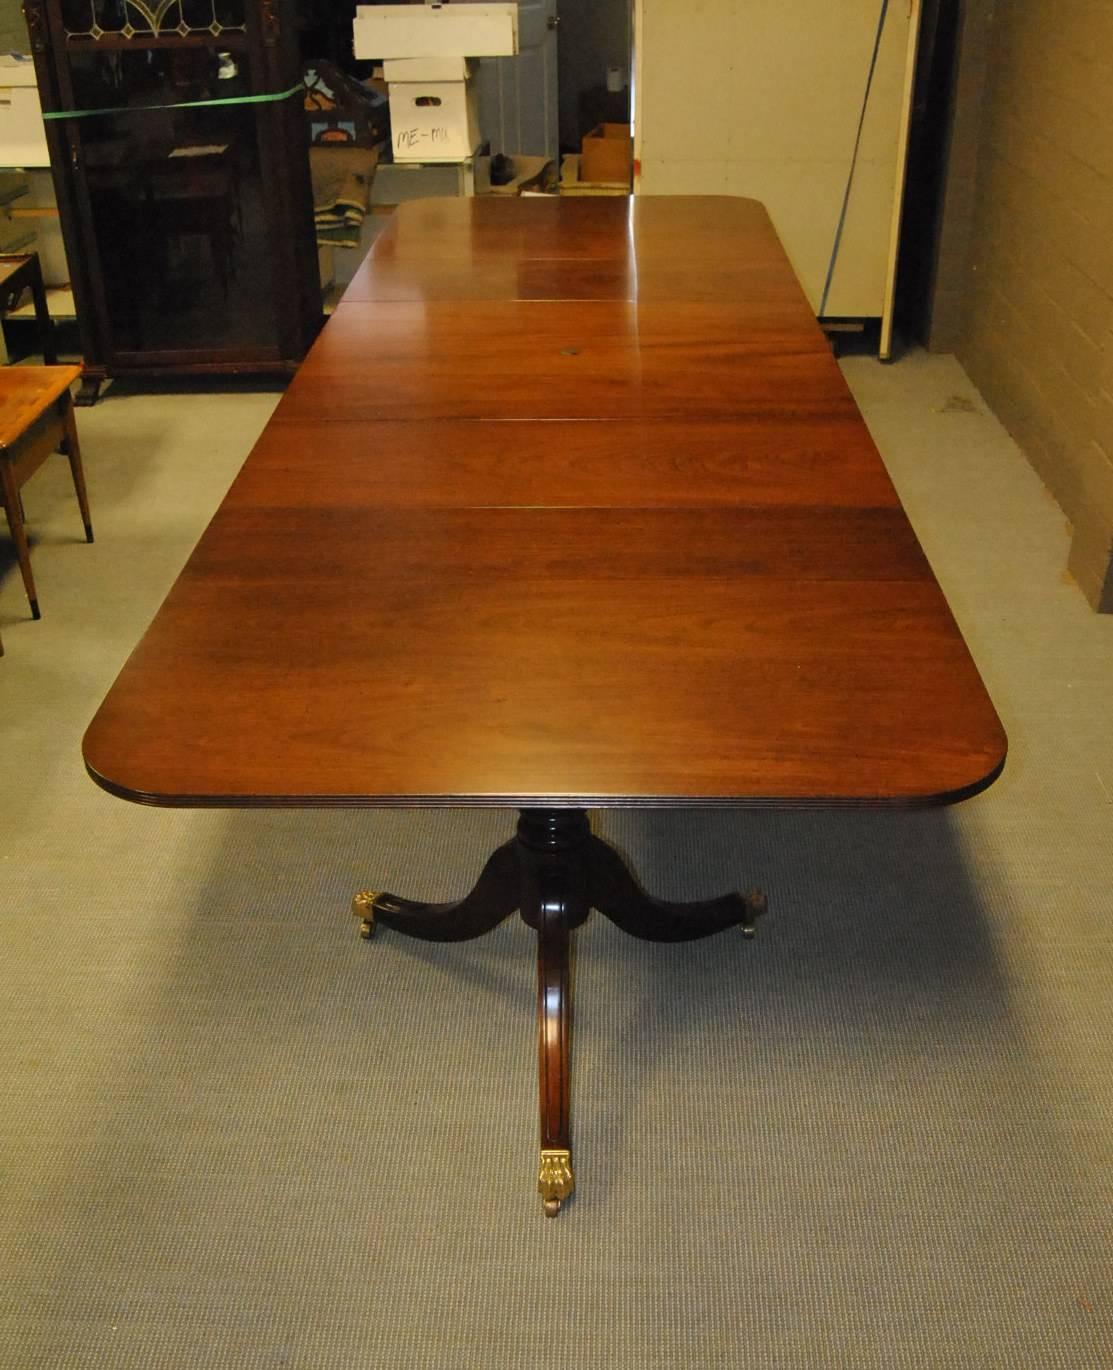 Ein ungewöhnlicher Konferenztisch aus Mahagoni im Stil des 18. Jahrhunderts von Kittinger. Der Tisch ist mit drei Sockeln ausgestattet (zwei mit drei Beinen und der mittlere Sockel mit vier Beinen). Jedes Bein des Sockels endet in einer Tatzenkappe